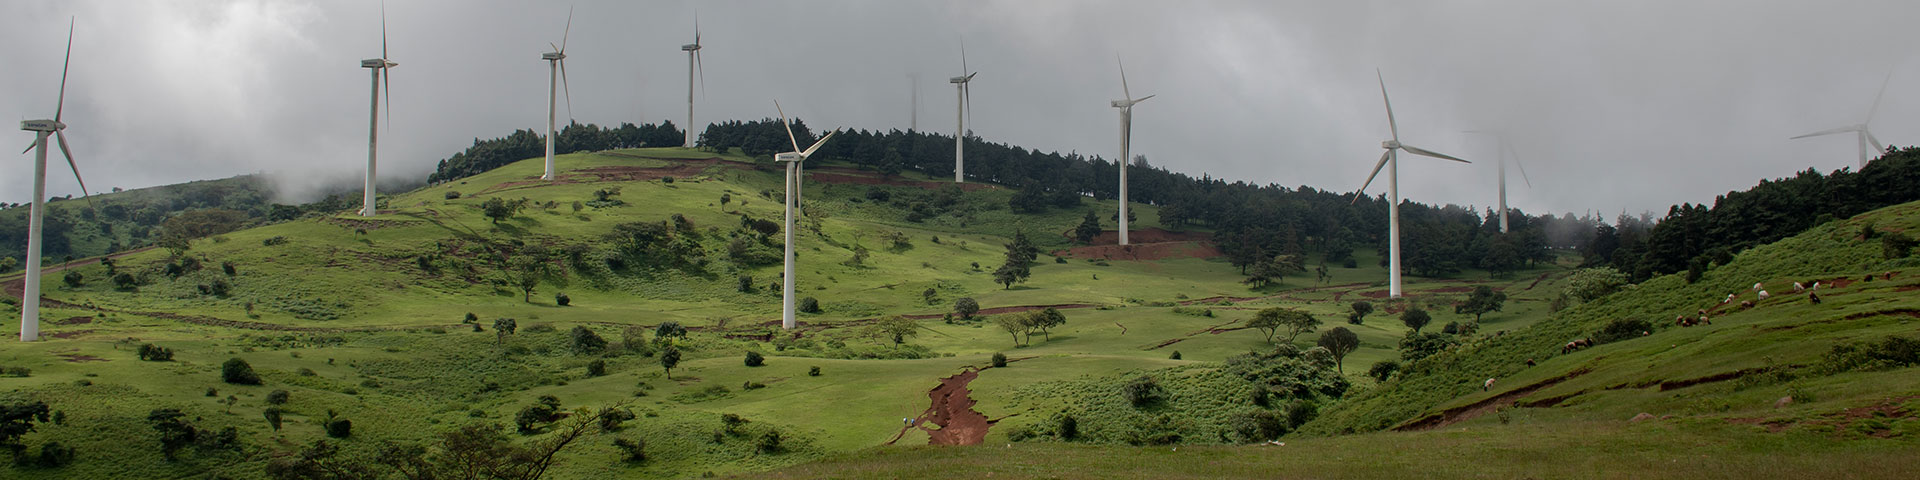 Mehrere Windanlagen stehen auf einem Hügel und nutzen die Windkraft, um saubere und erneuerbare Energie zu erzeugen.